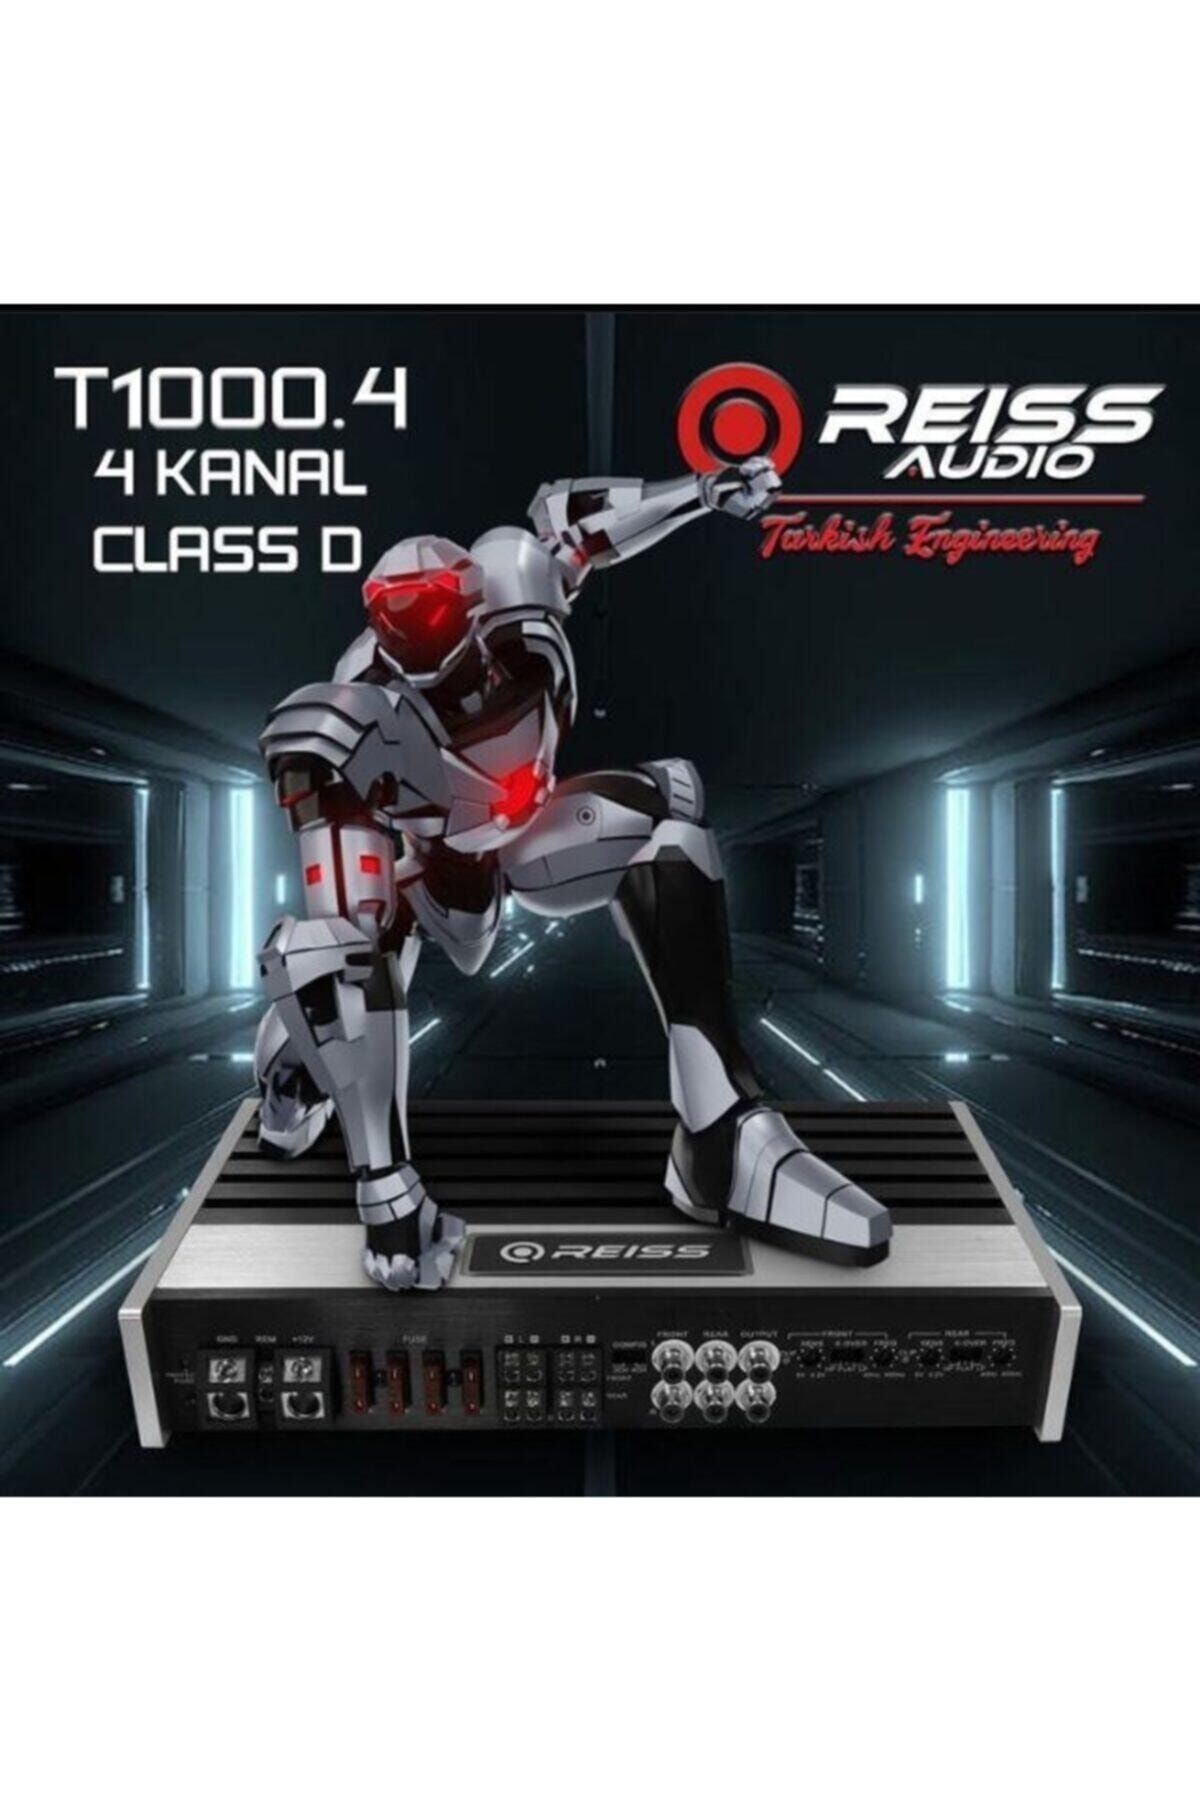 REISS AUDIO Reiss Audıo Rs-t1000.4 4 Kanal Class D • 250watts X 4ch @ 4 Ohms Rms Output • 500watts